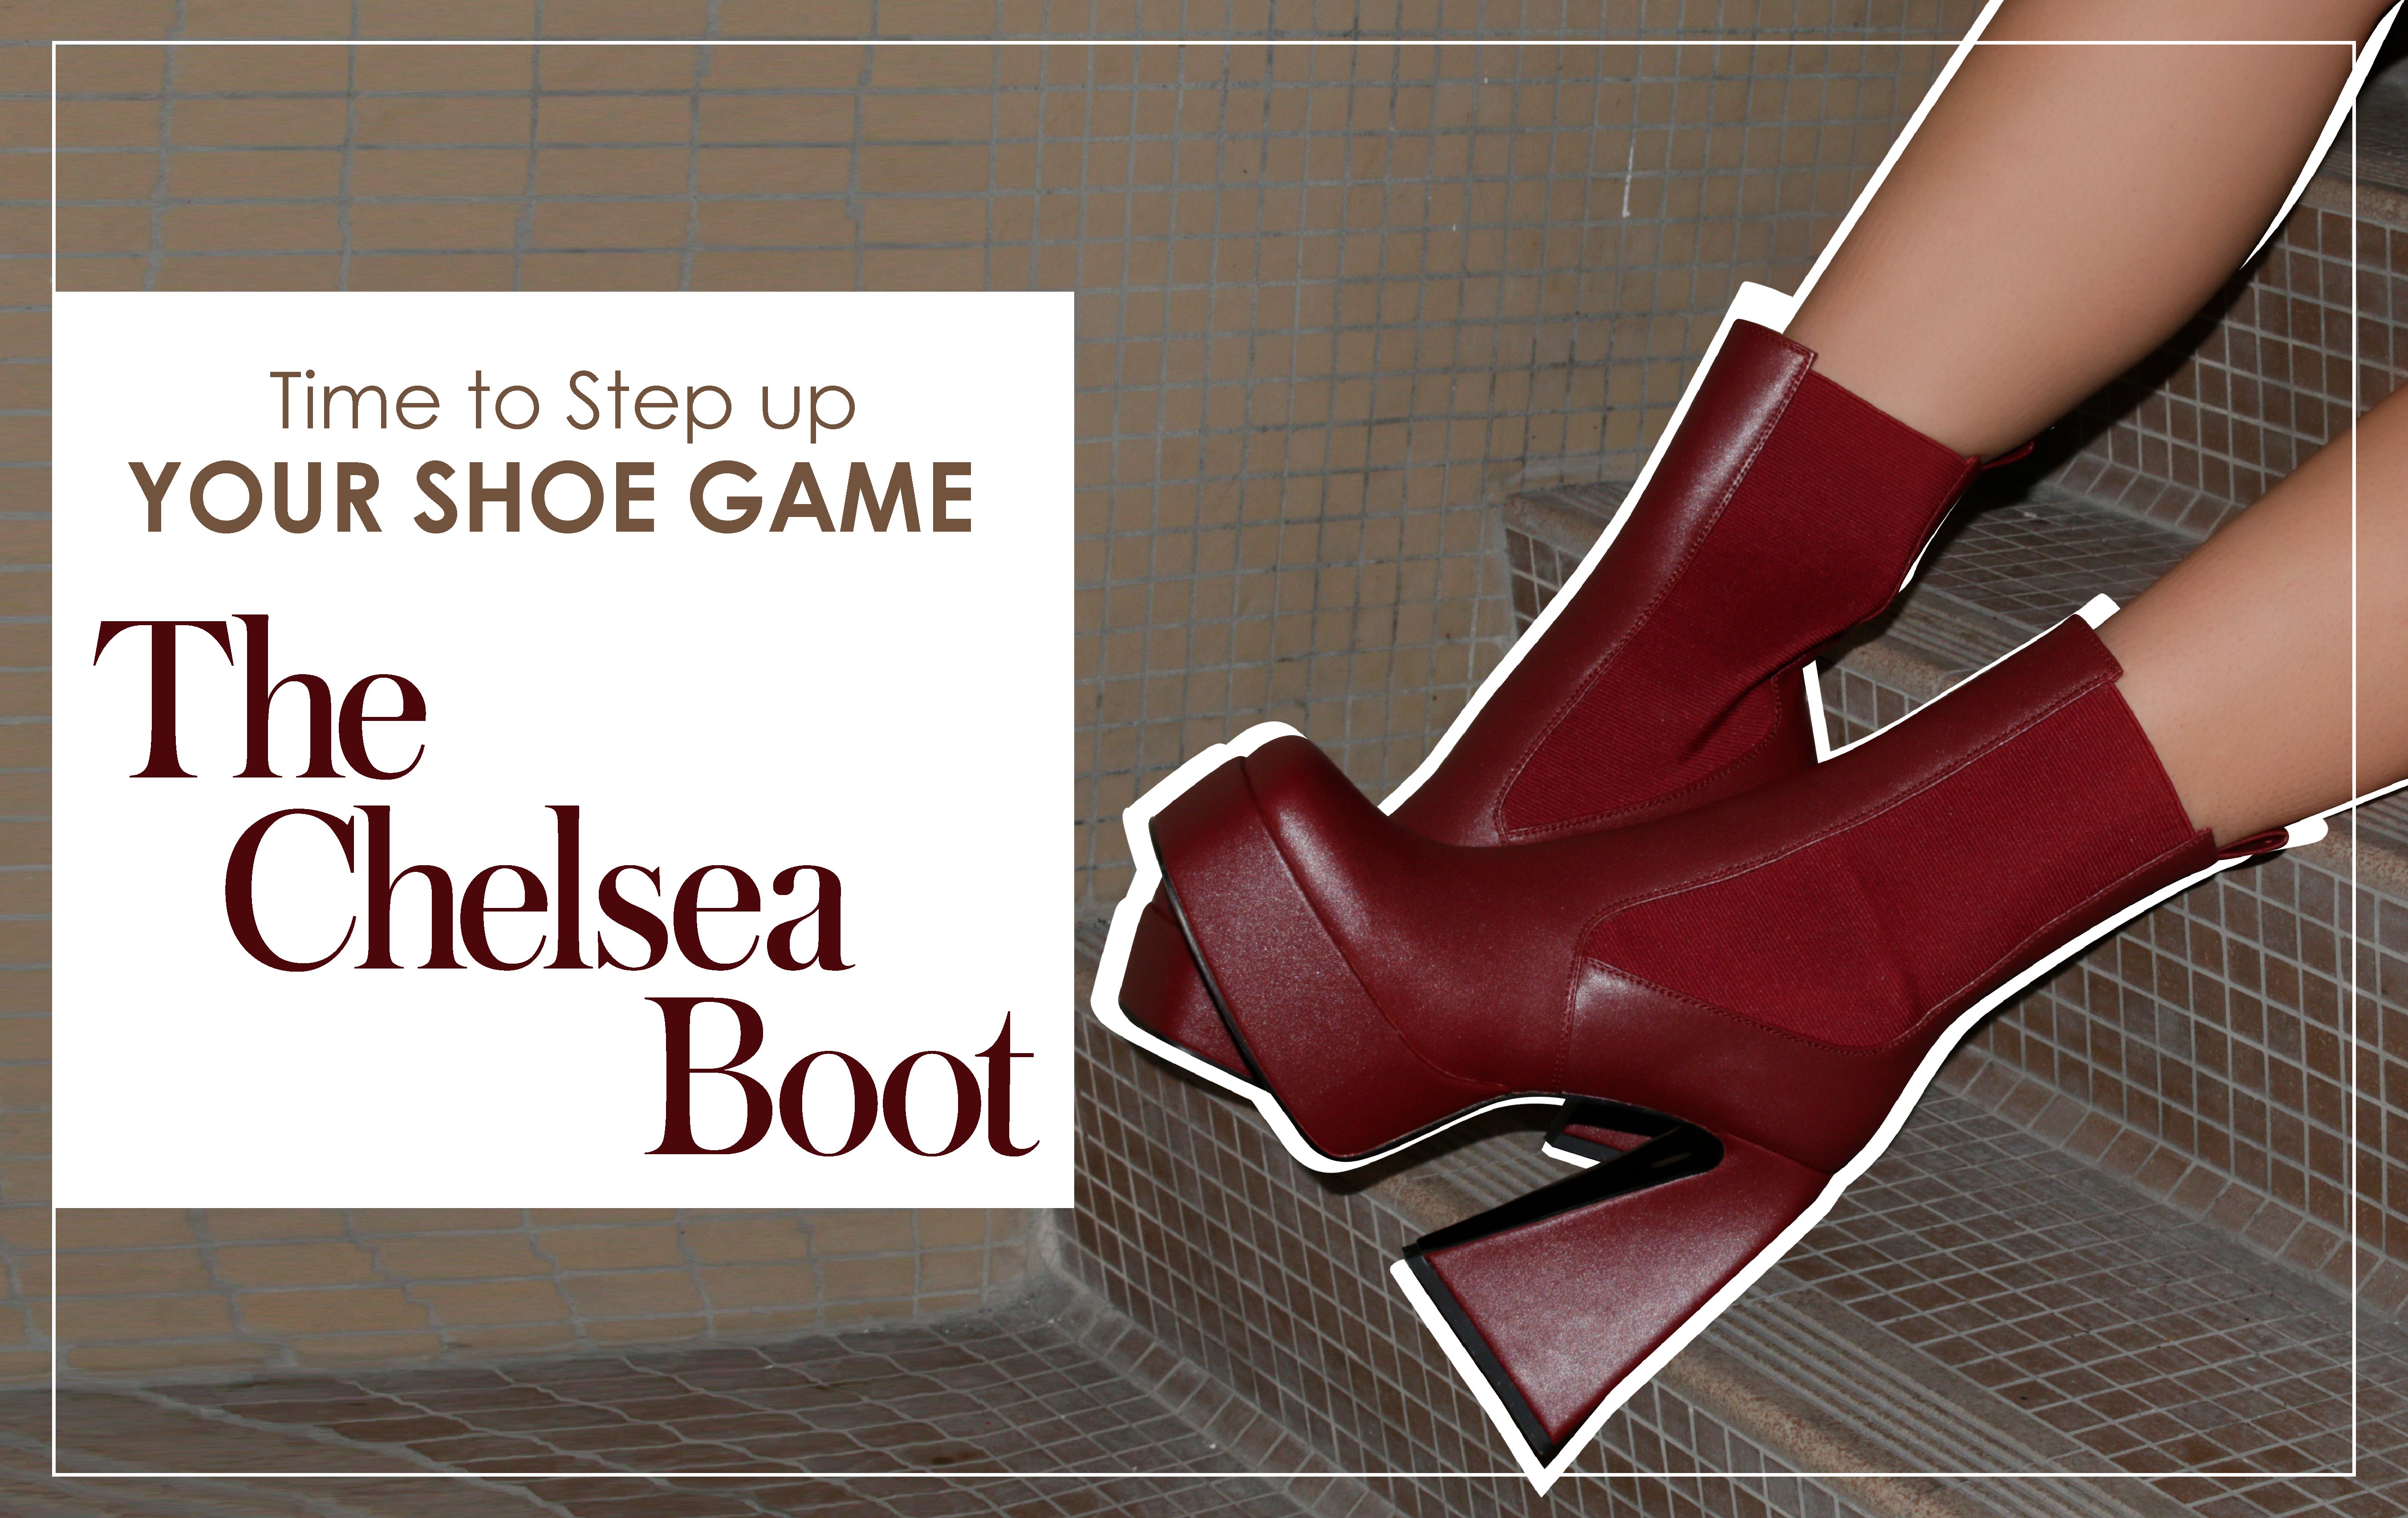 Es hora de intensificar tu juego de zapatos: la bota Chelsea